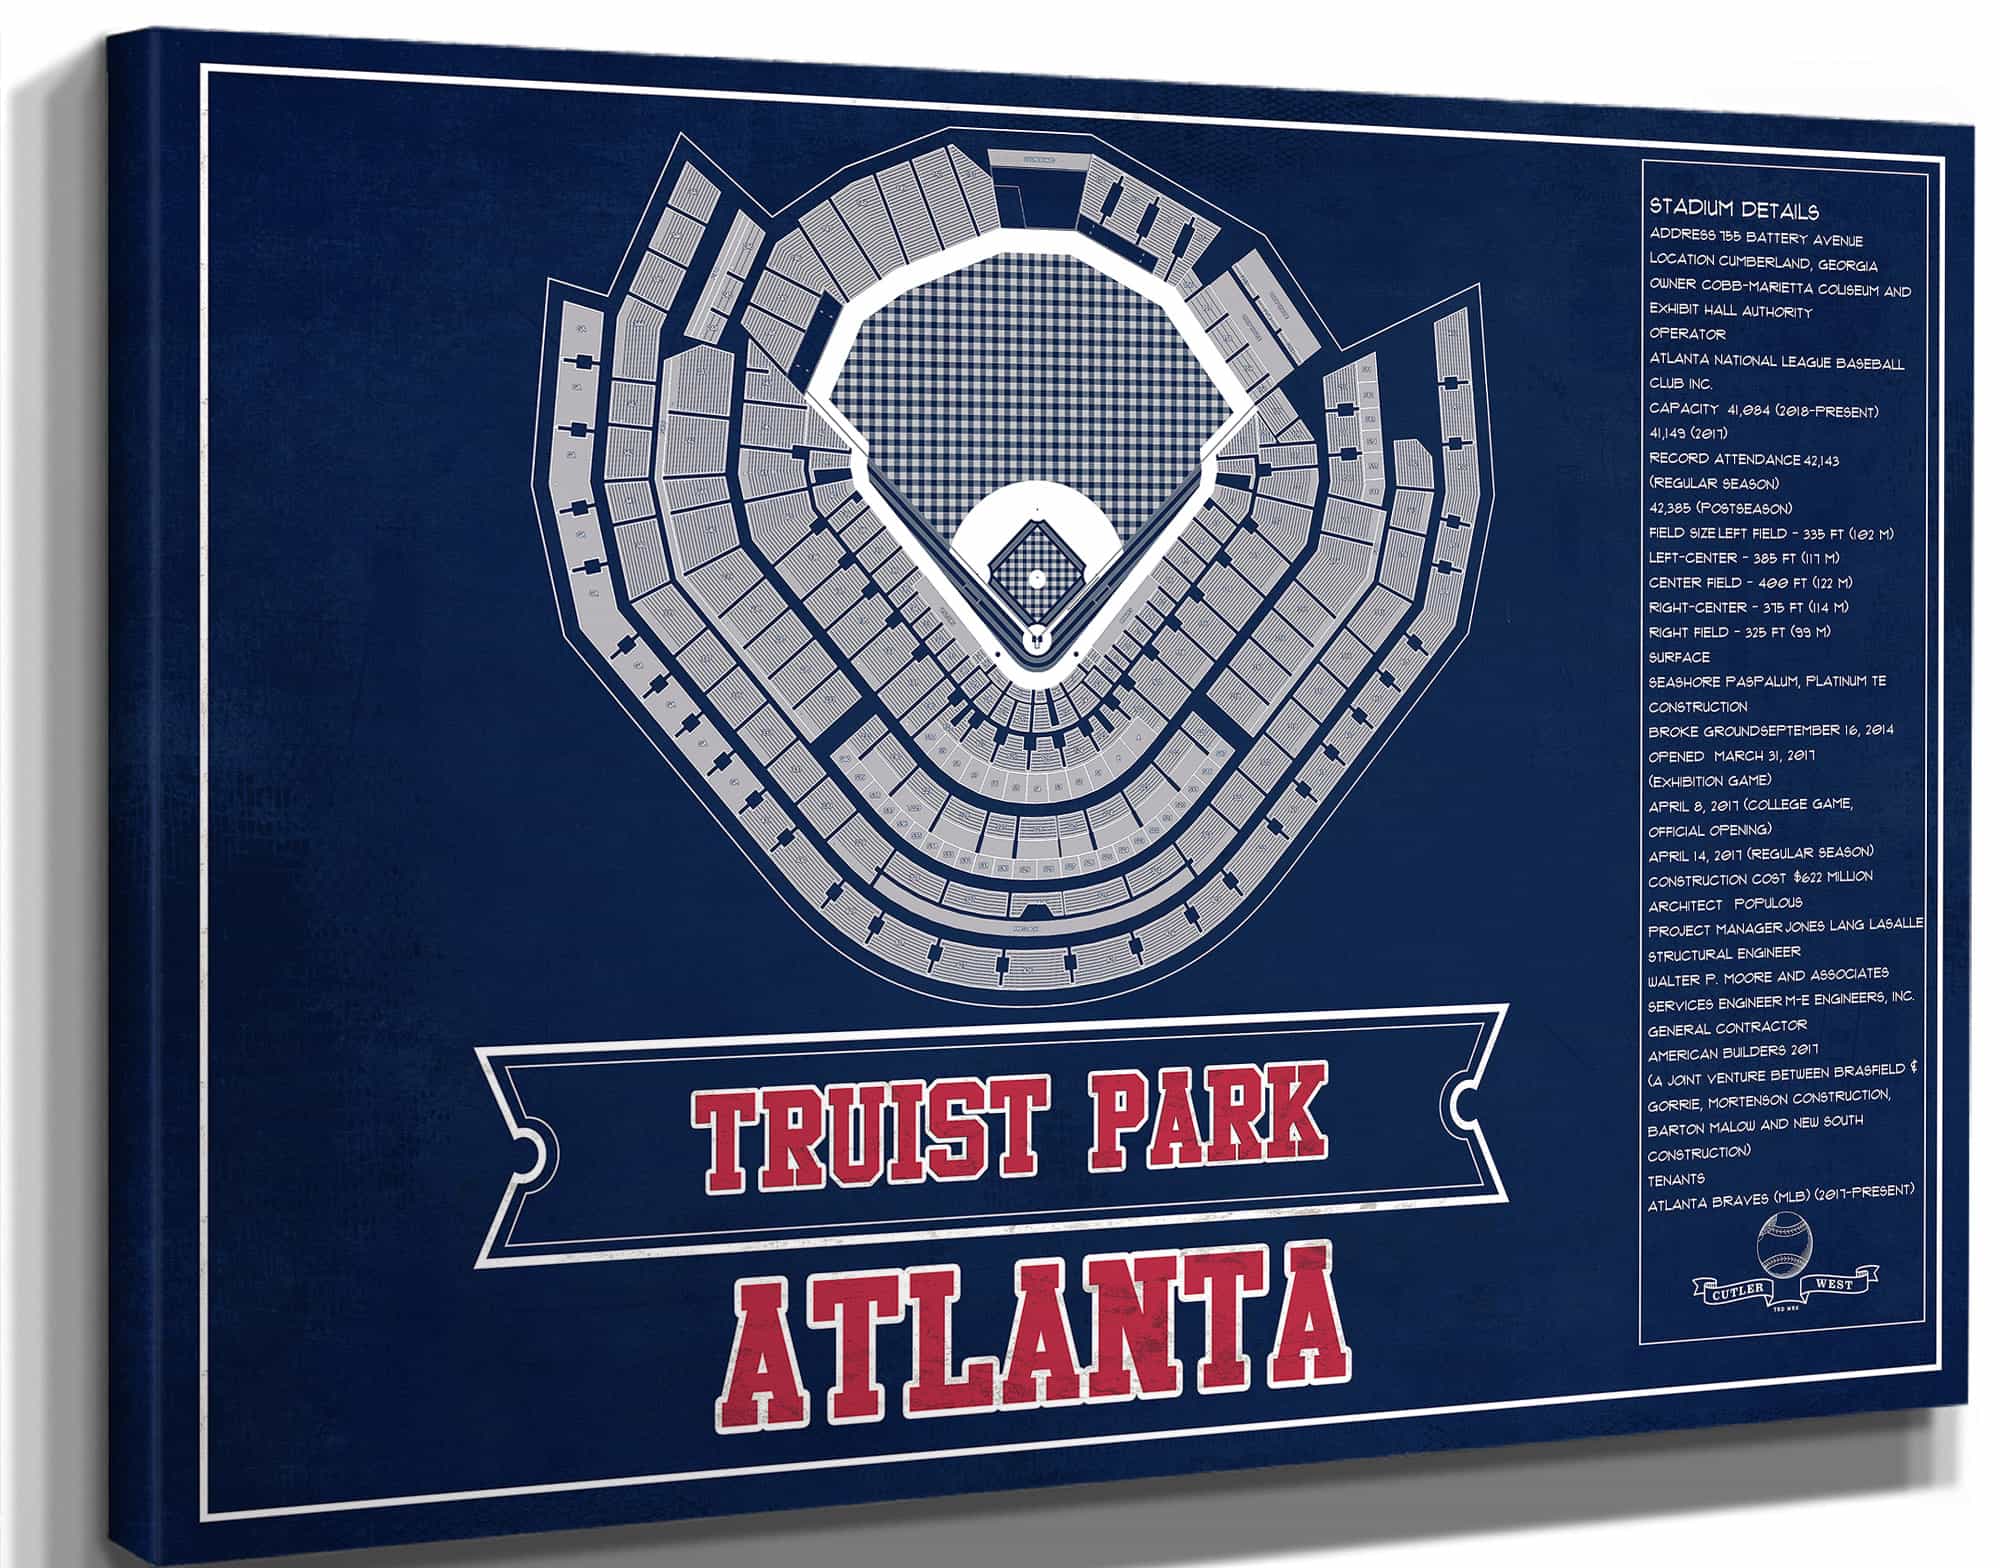 Turner Field - Atlanta Braves (MLB) Team Color Vintage Baseball Print